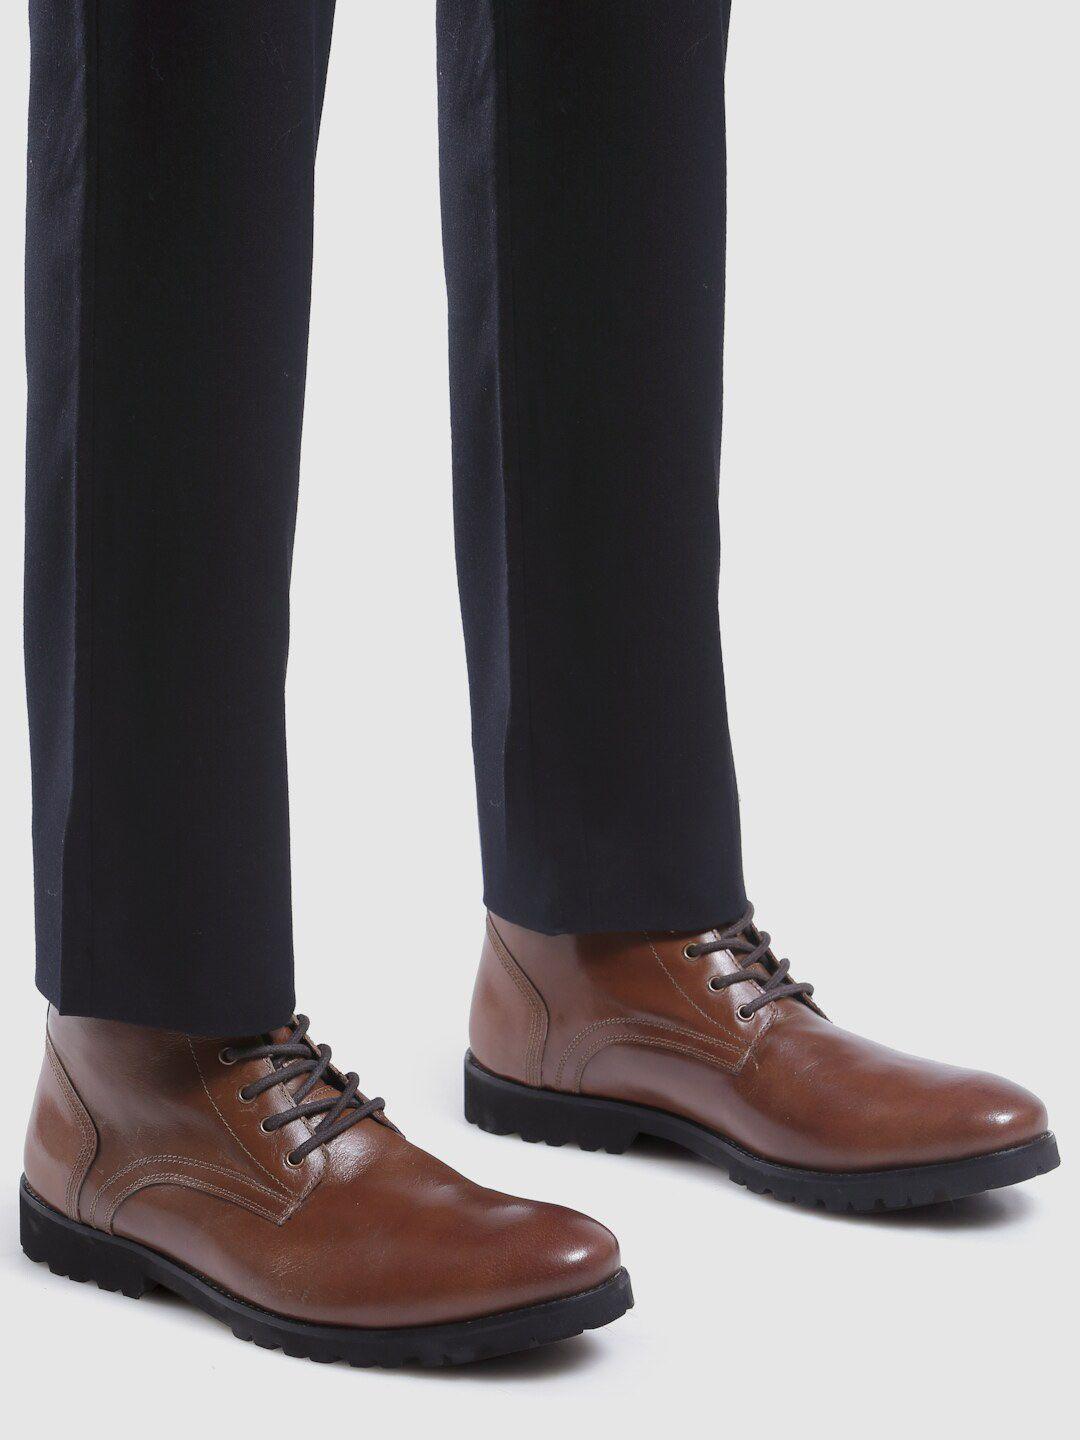 hats-off-accessories-men-mid-top-block-heel-leather-regular-boots